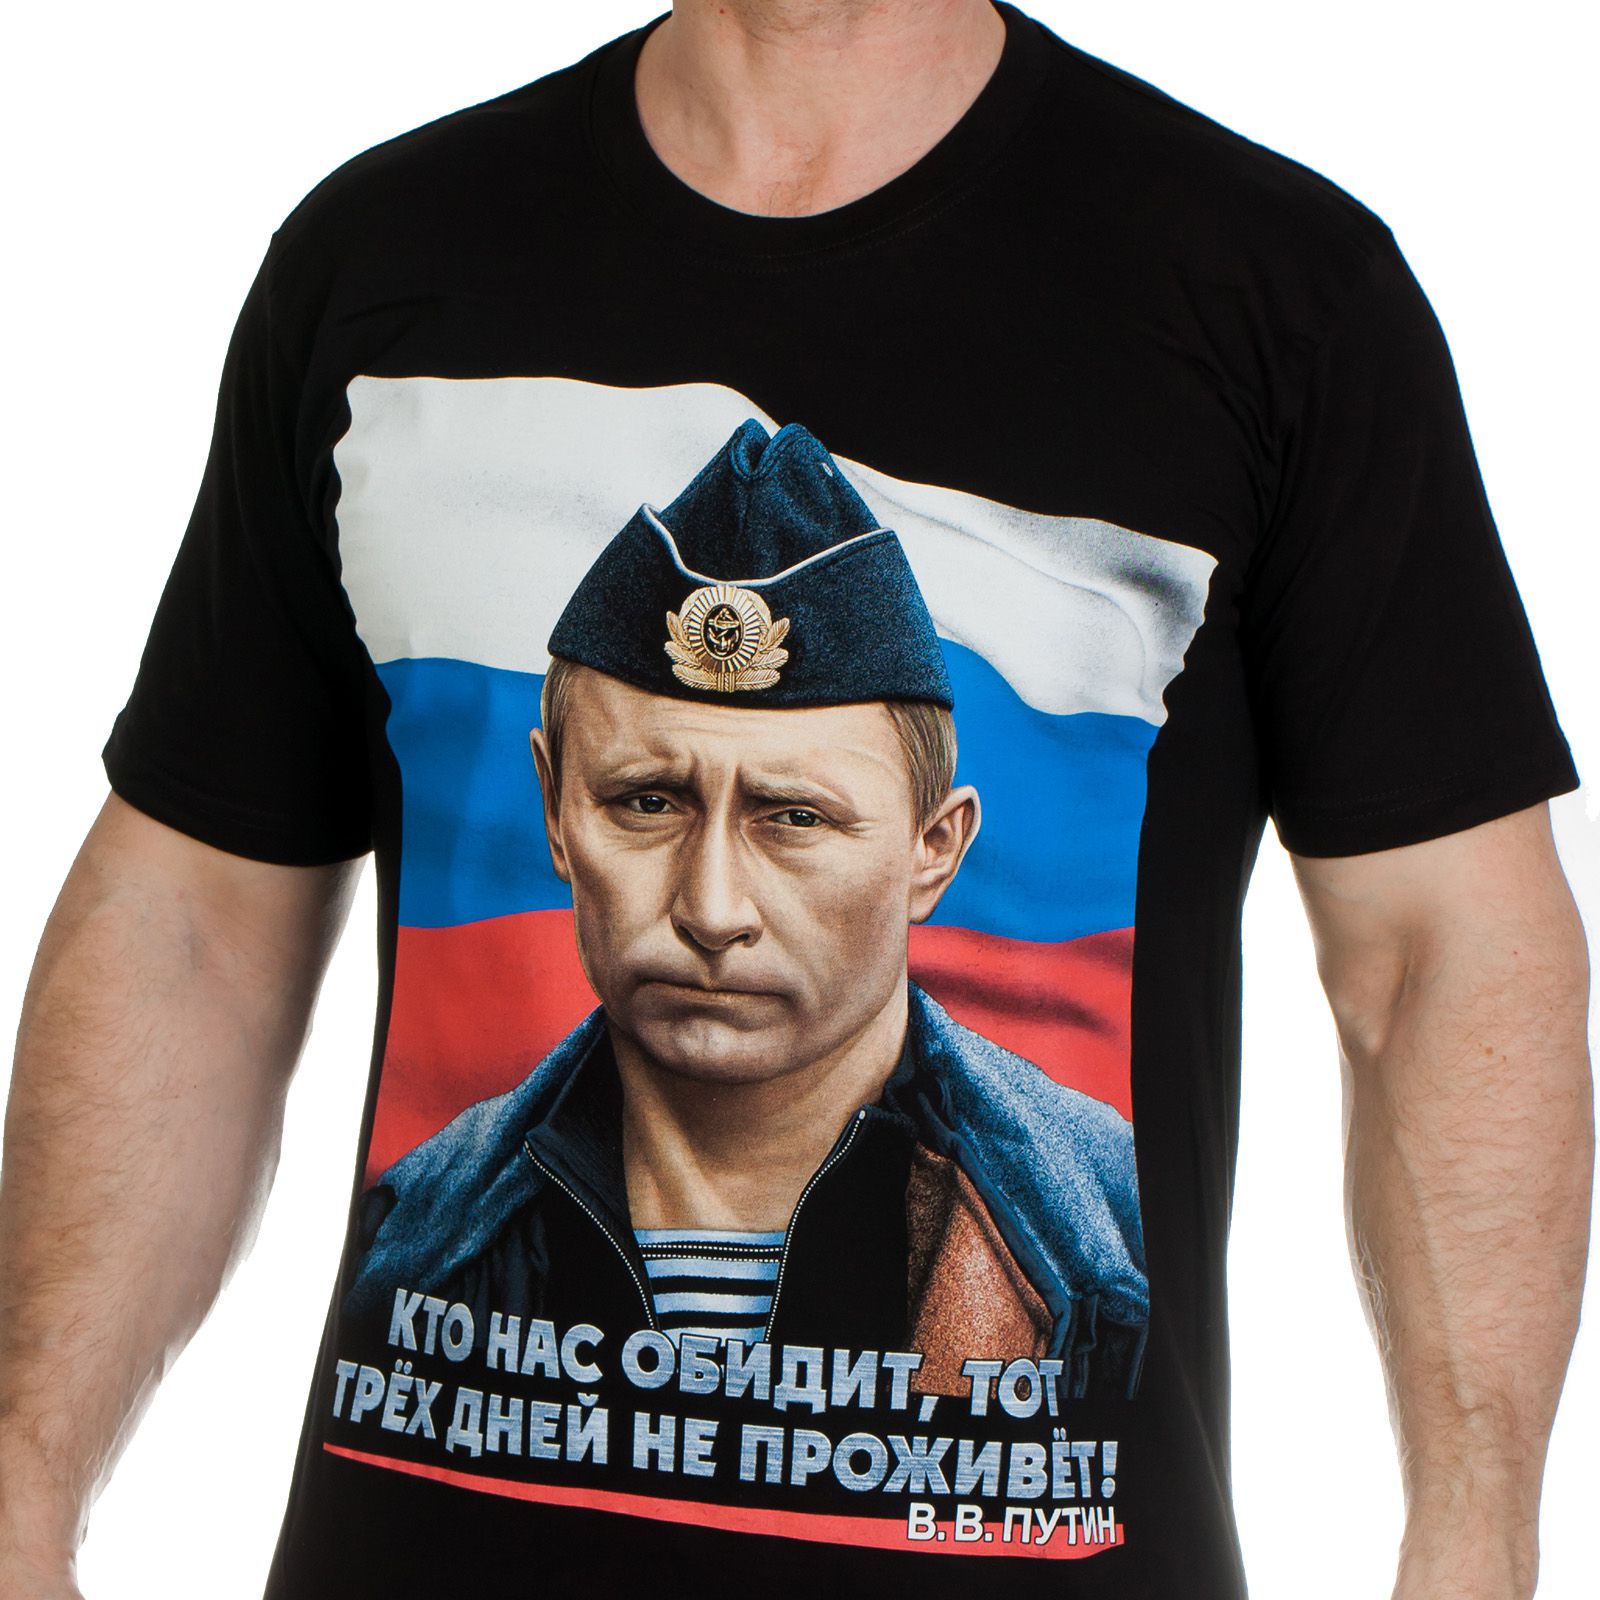 Купить футболку с портретом Путина по лучшей цене